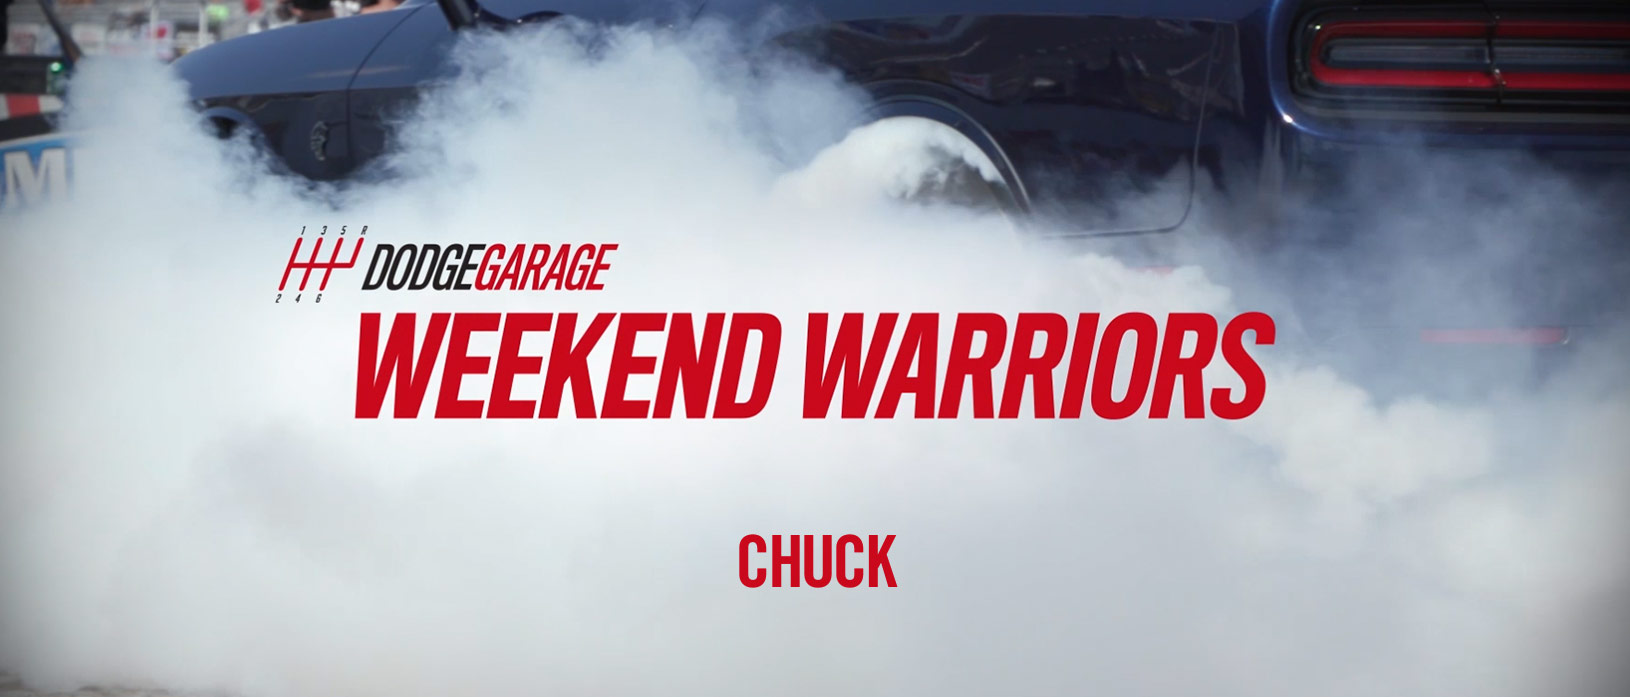 Weekend Warriors Chuck